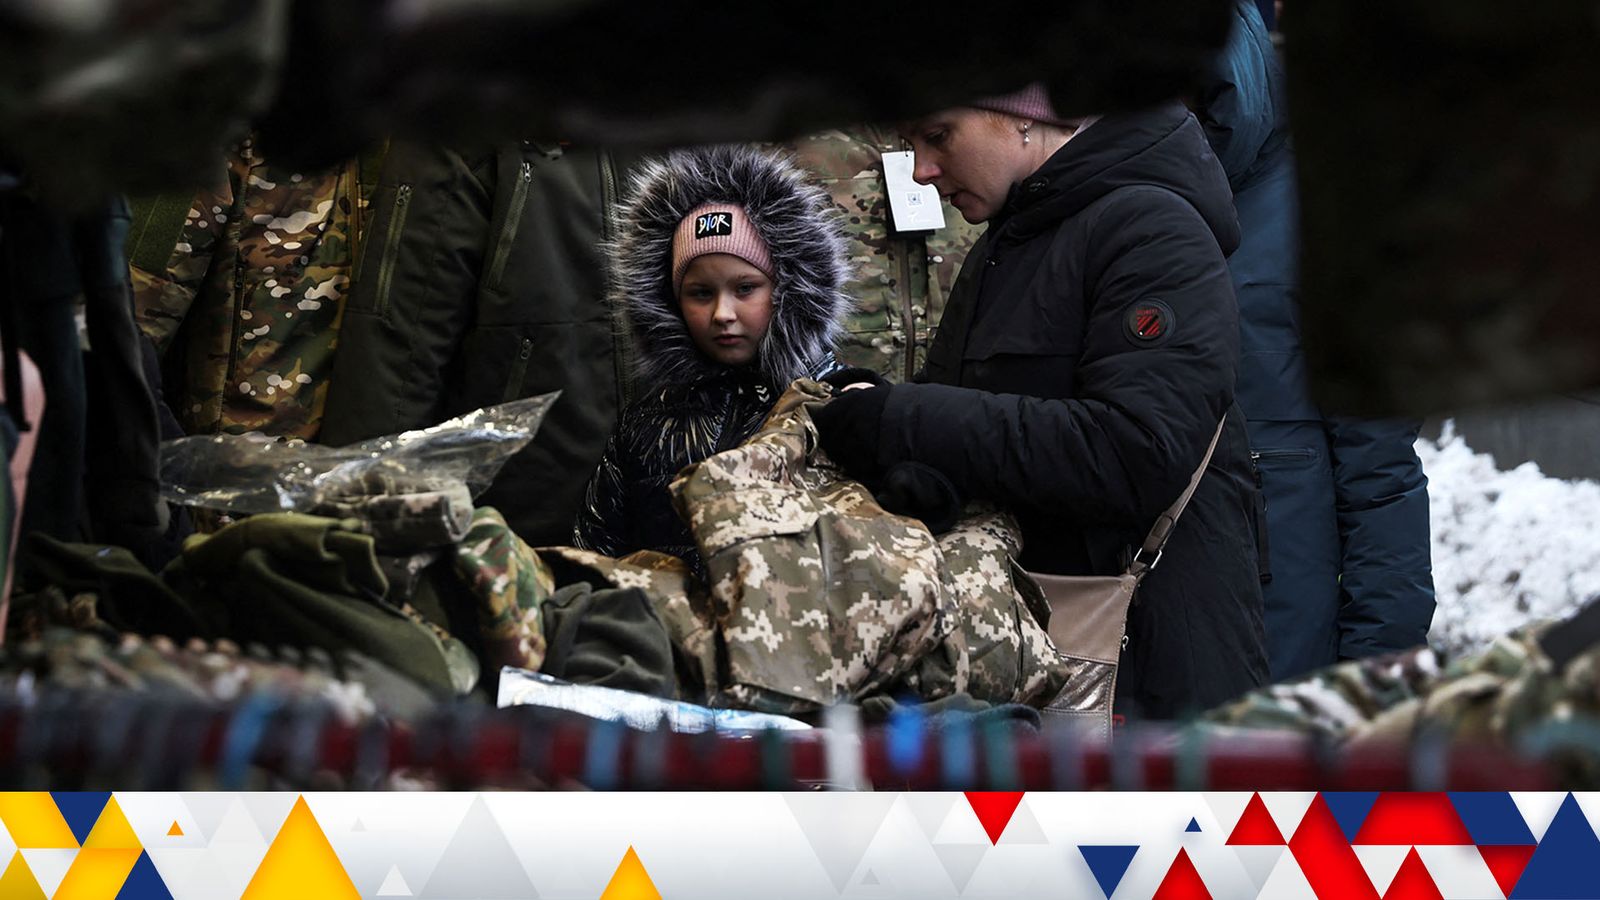 Ostatnia wojna na Ukrainie: Rosja traci „znacząco” poparcie społeczne dla inwazji;  spodziewana „kolejna fala ukraińskich uchodźców” pod koniec zimy |  Wiadomości ze świata